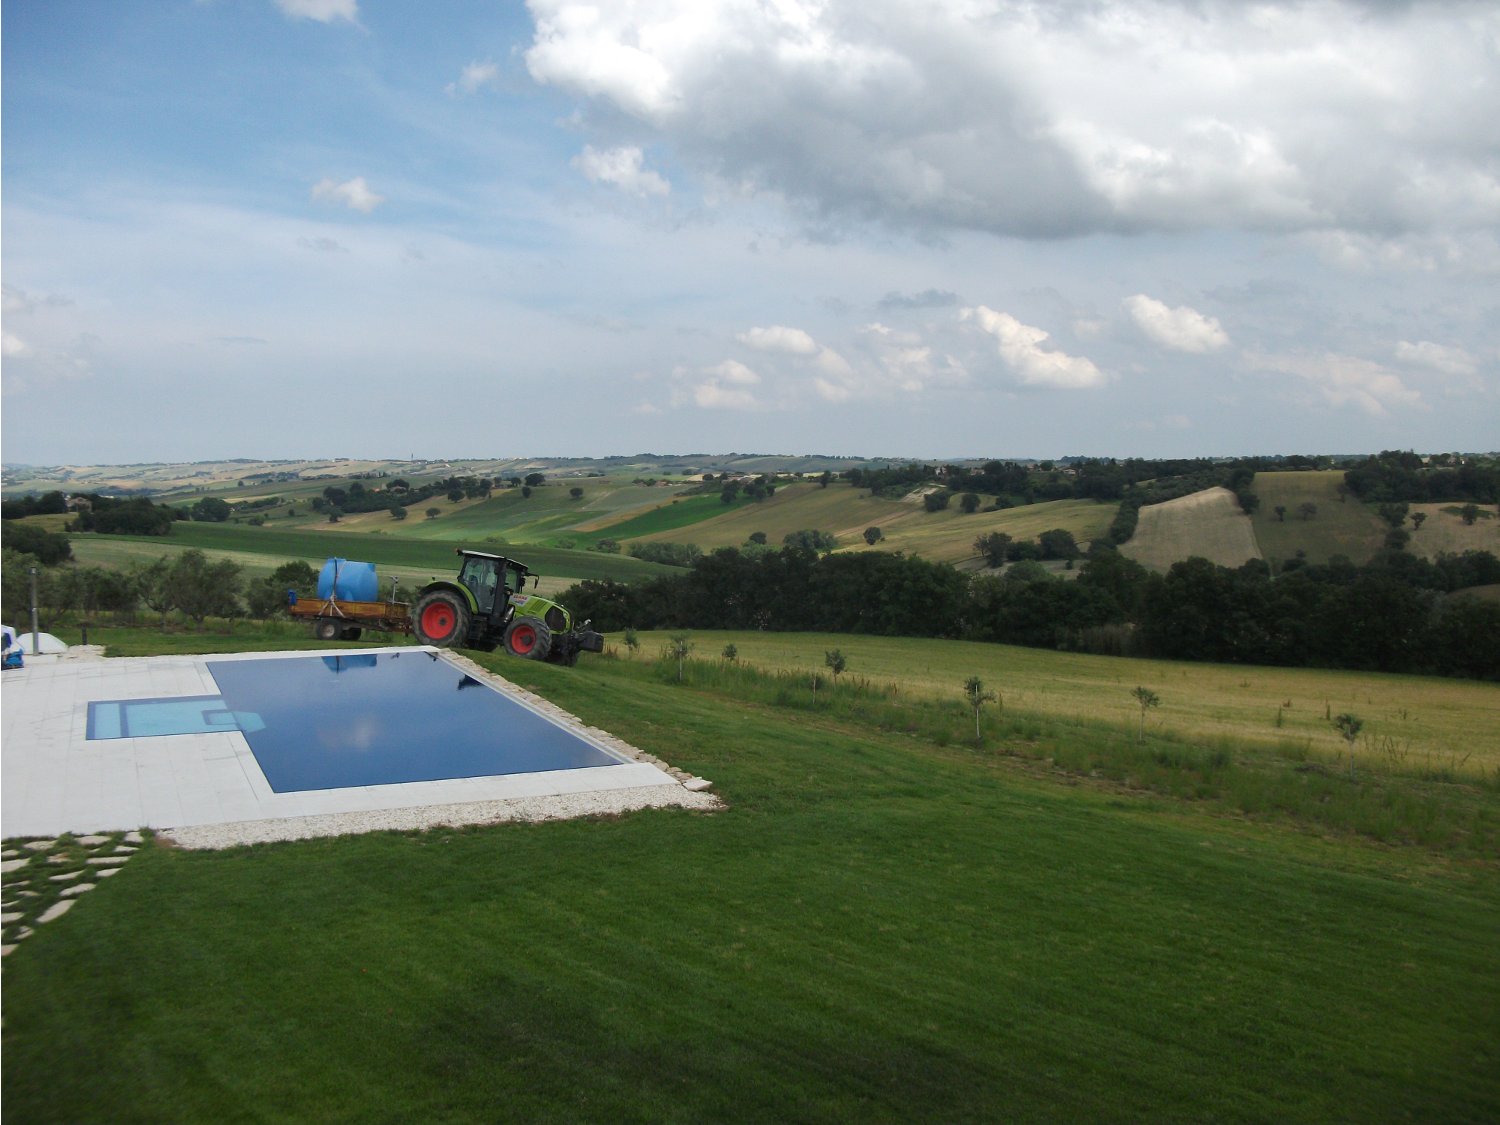 Panoramica di una piscina a sfioro realizzata su misura con le tecnologie innovative ed affidabili Zavatti